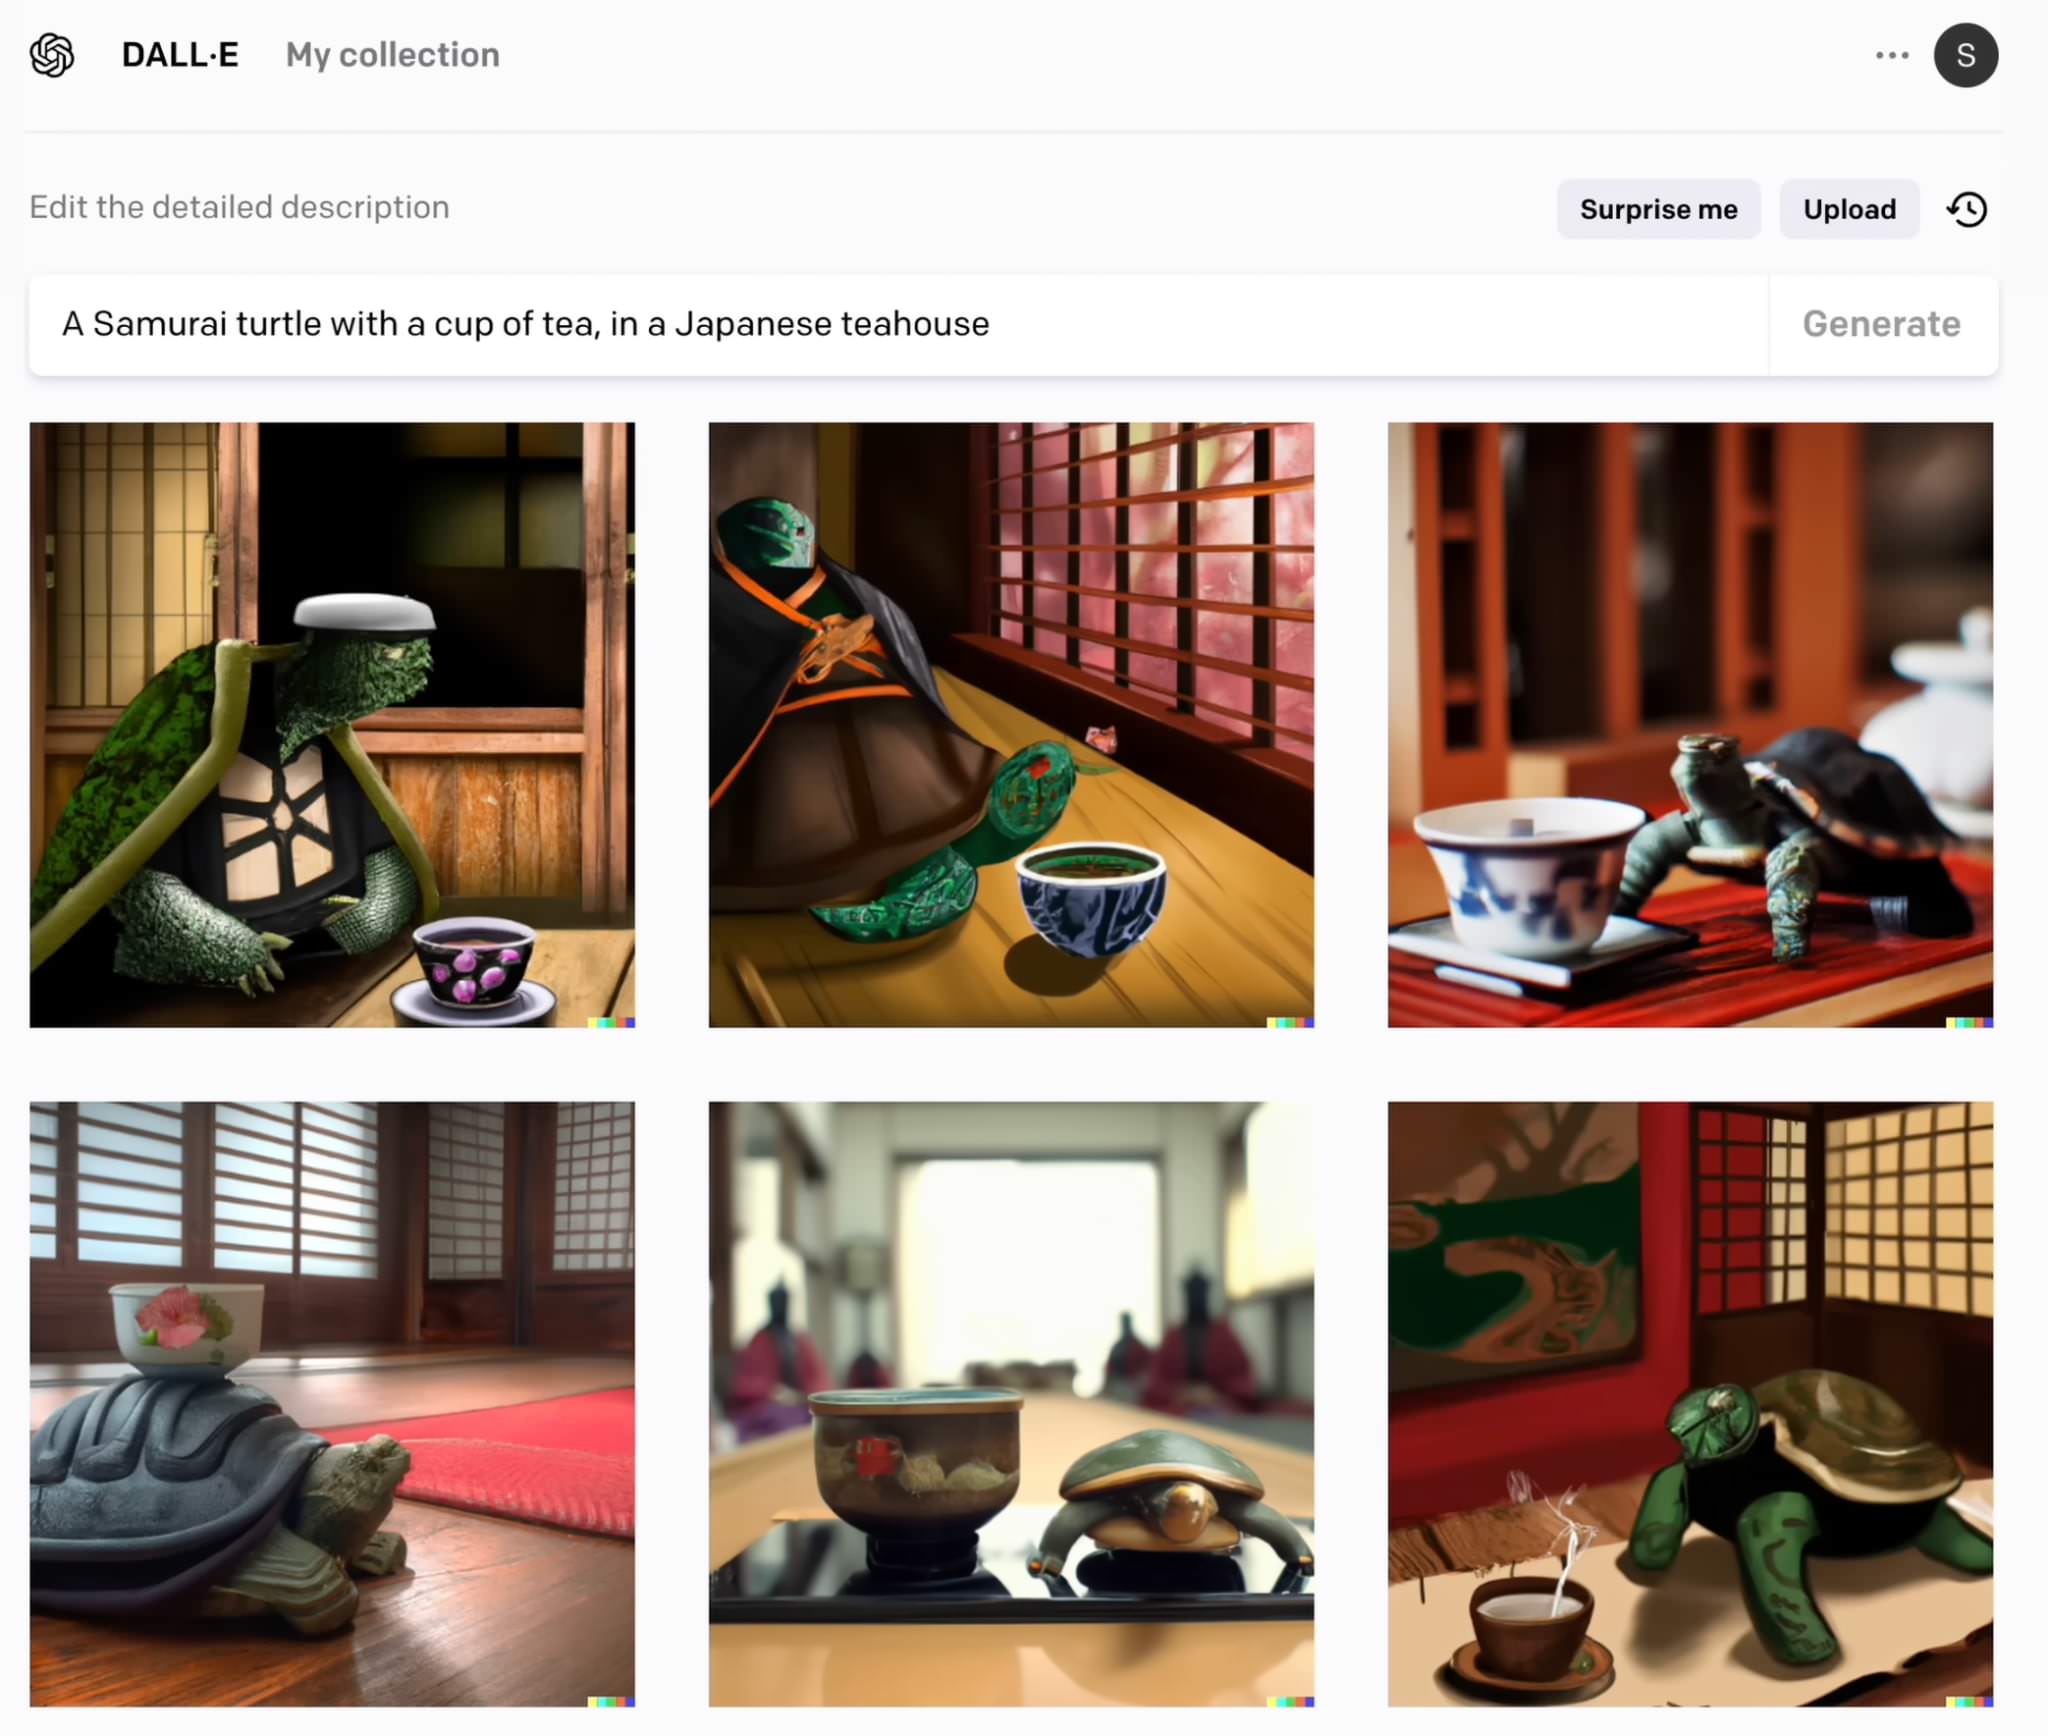 Una tortuga samurai tomando té en una casa de té japonés - DALL-E 2